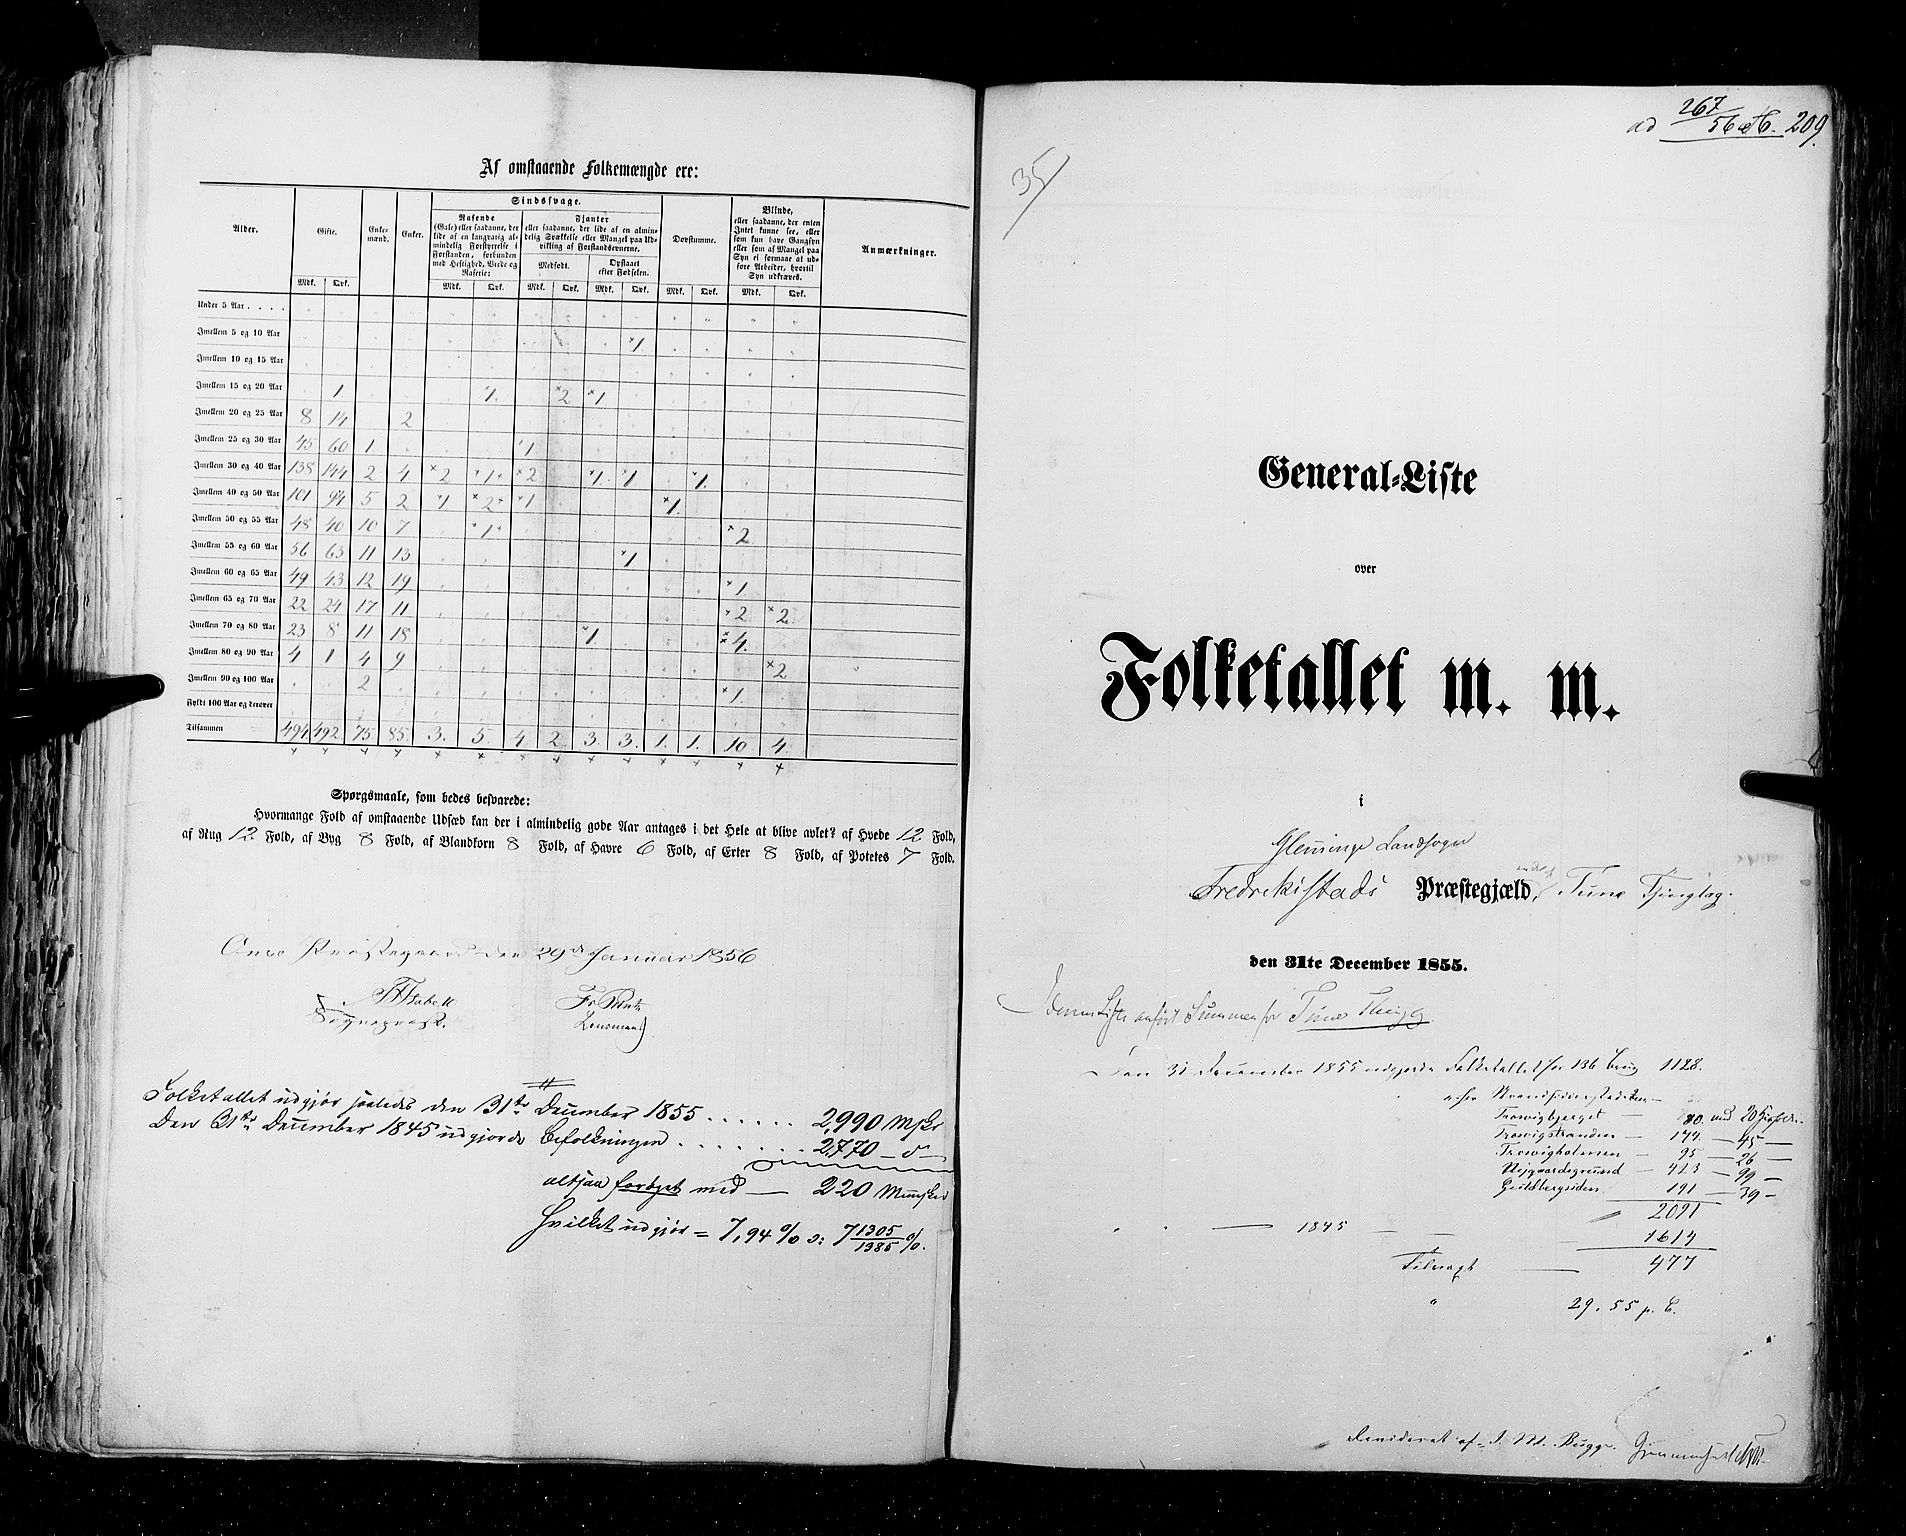 RA, Folketellingen 1855, bind 1: Akershus amt, Smålenenes amt og Hedemarken amt, 1855, s. 209